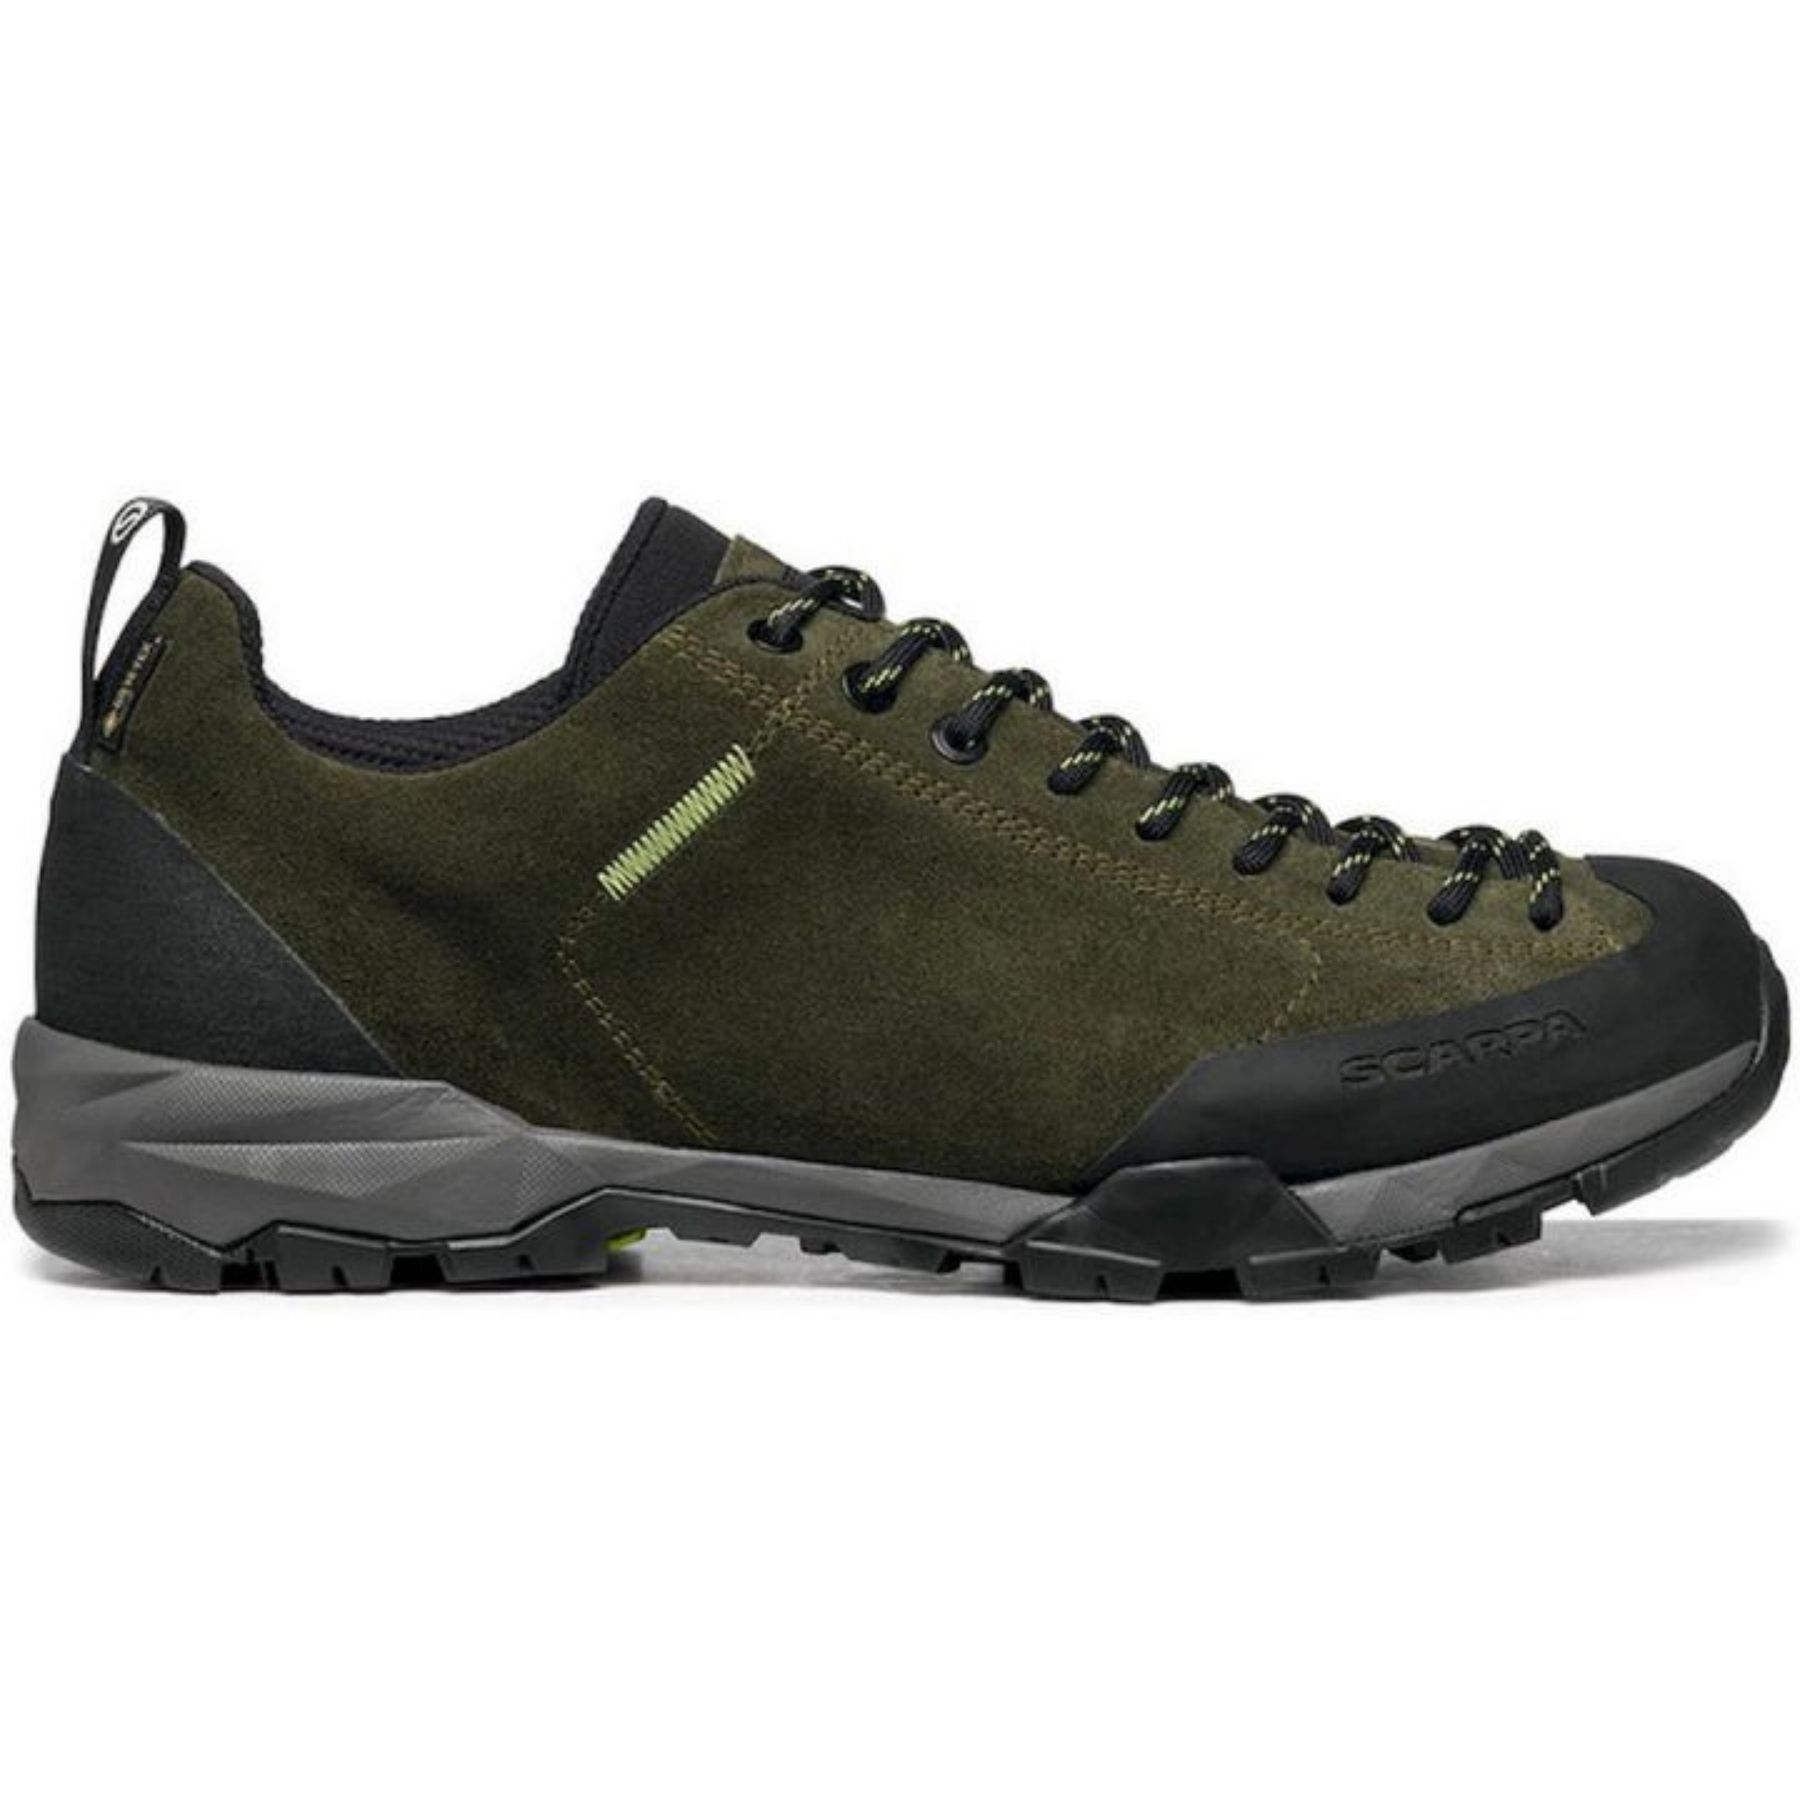 Scarpa Mojito Trail GTX - Walking shoes - Men's